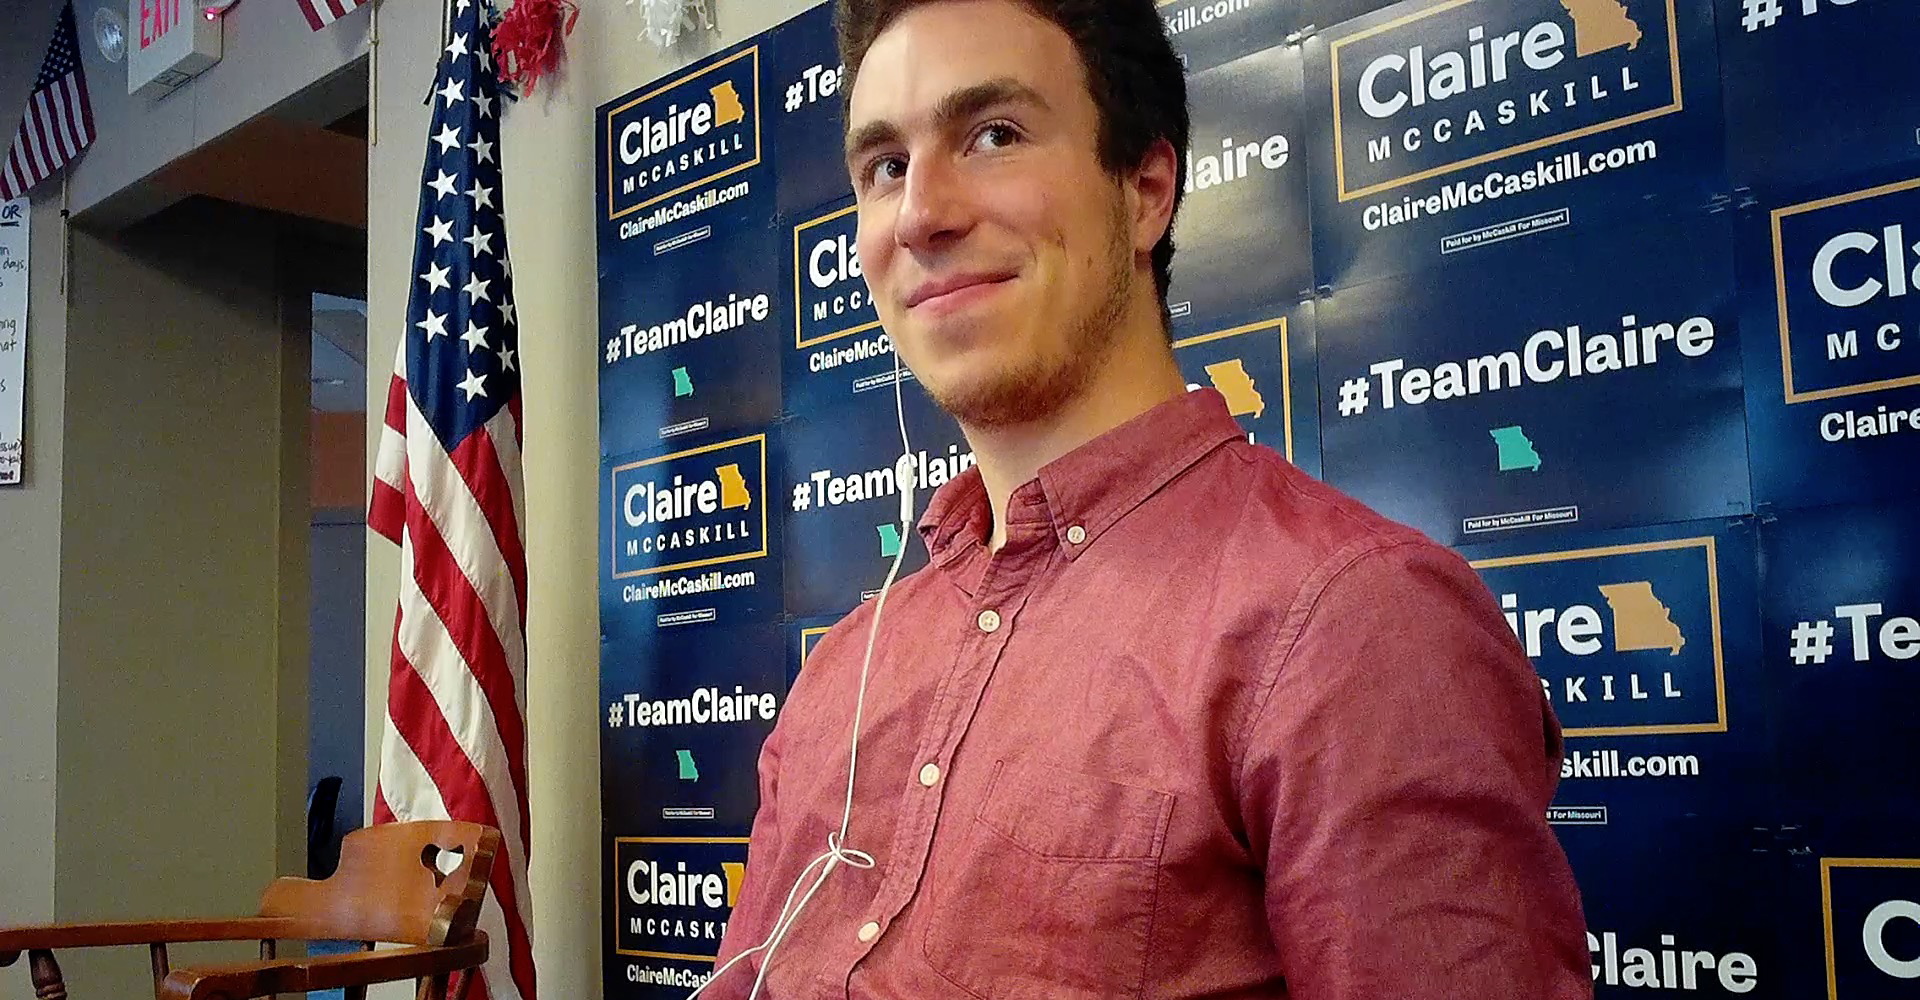 Nicholas Starost, Sen. Claire McCaskill’s campaign staffer